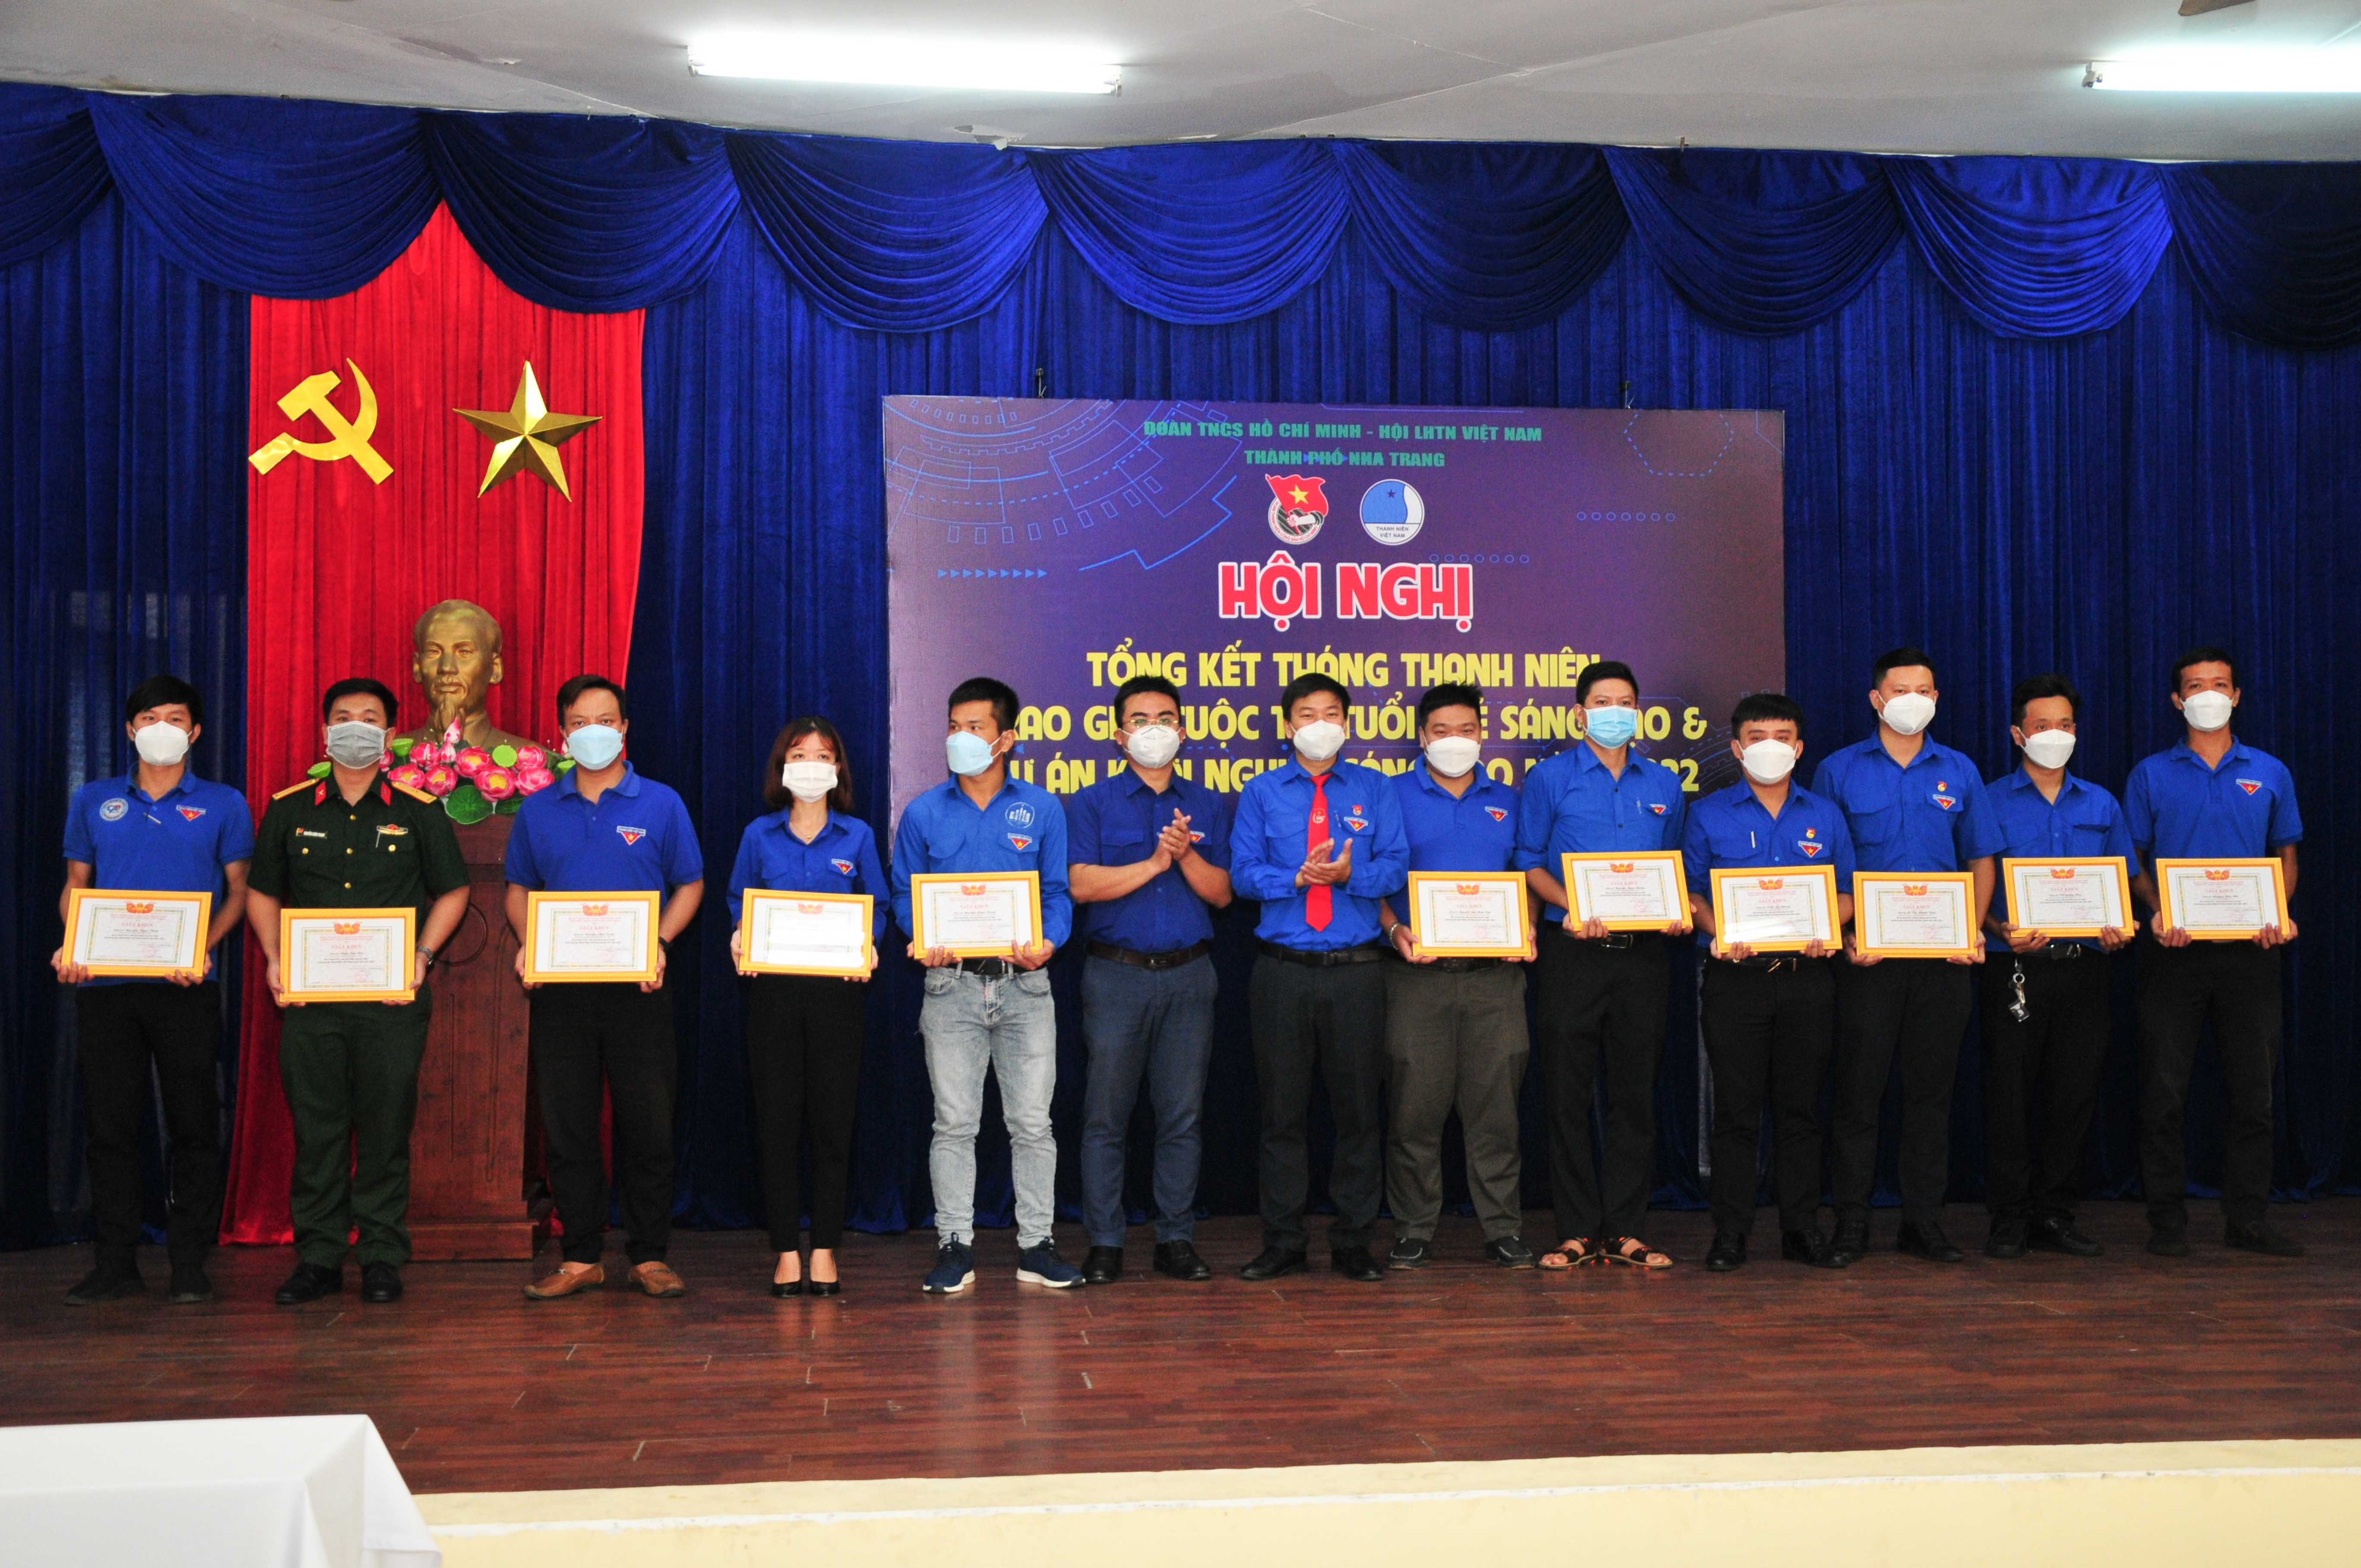 Thành đoàn Nha Trang khen thưởng các cá nhân xuất sắc